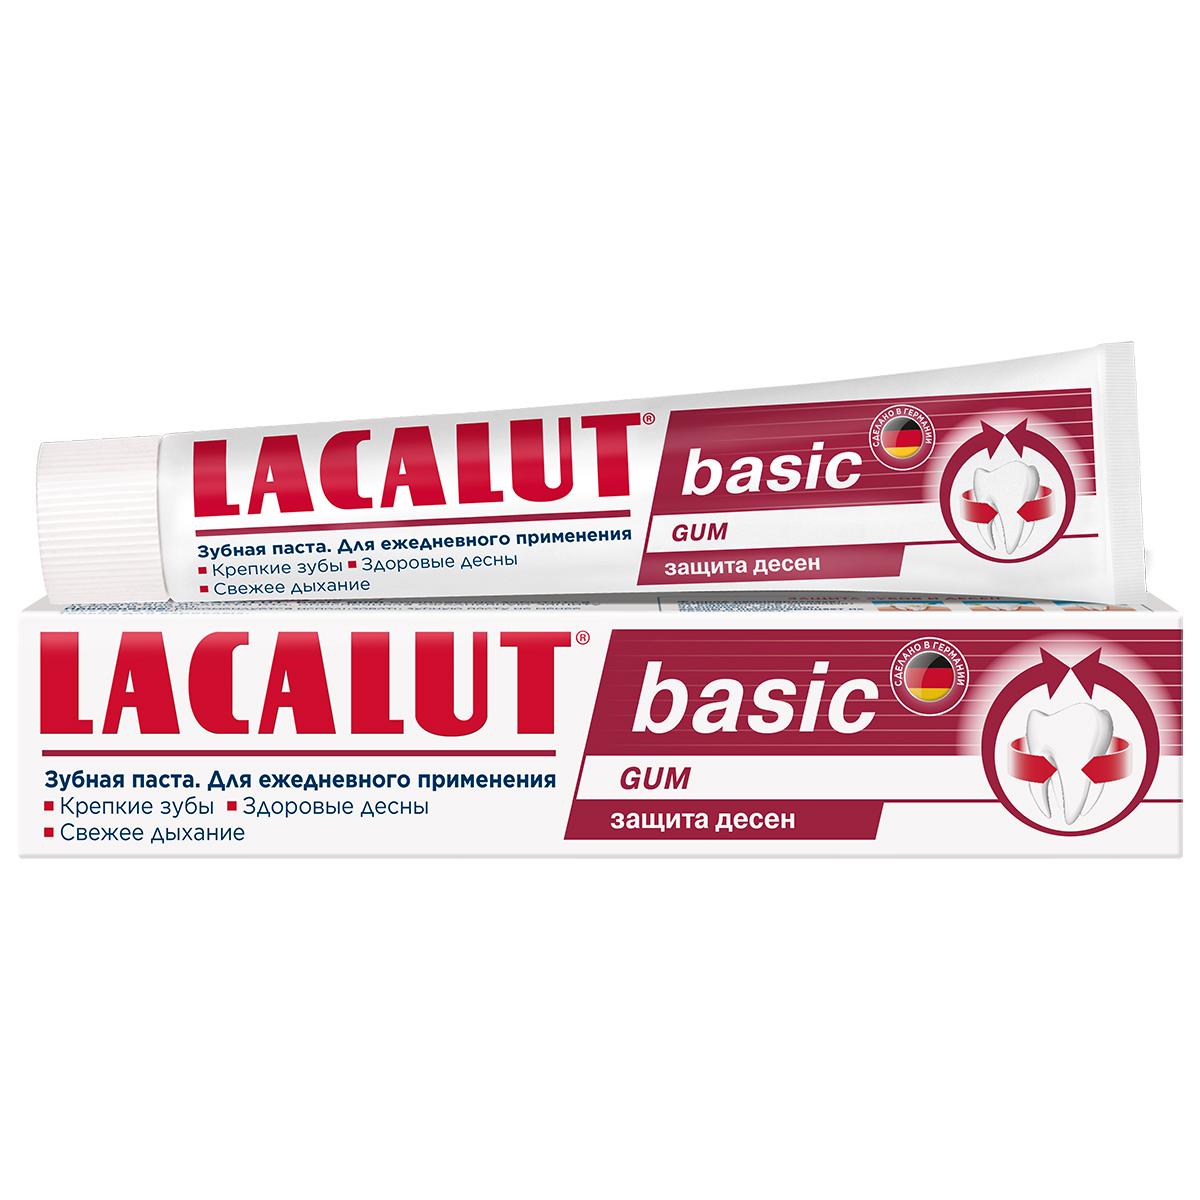 Lacalut Зубная паста Basic Gum для защиты десен, 75 мл (Lacalut, Зубные пасты) lacalut зубная паста basic gum для защиты десен 75 мл lacalut зубные пасты